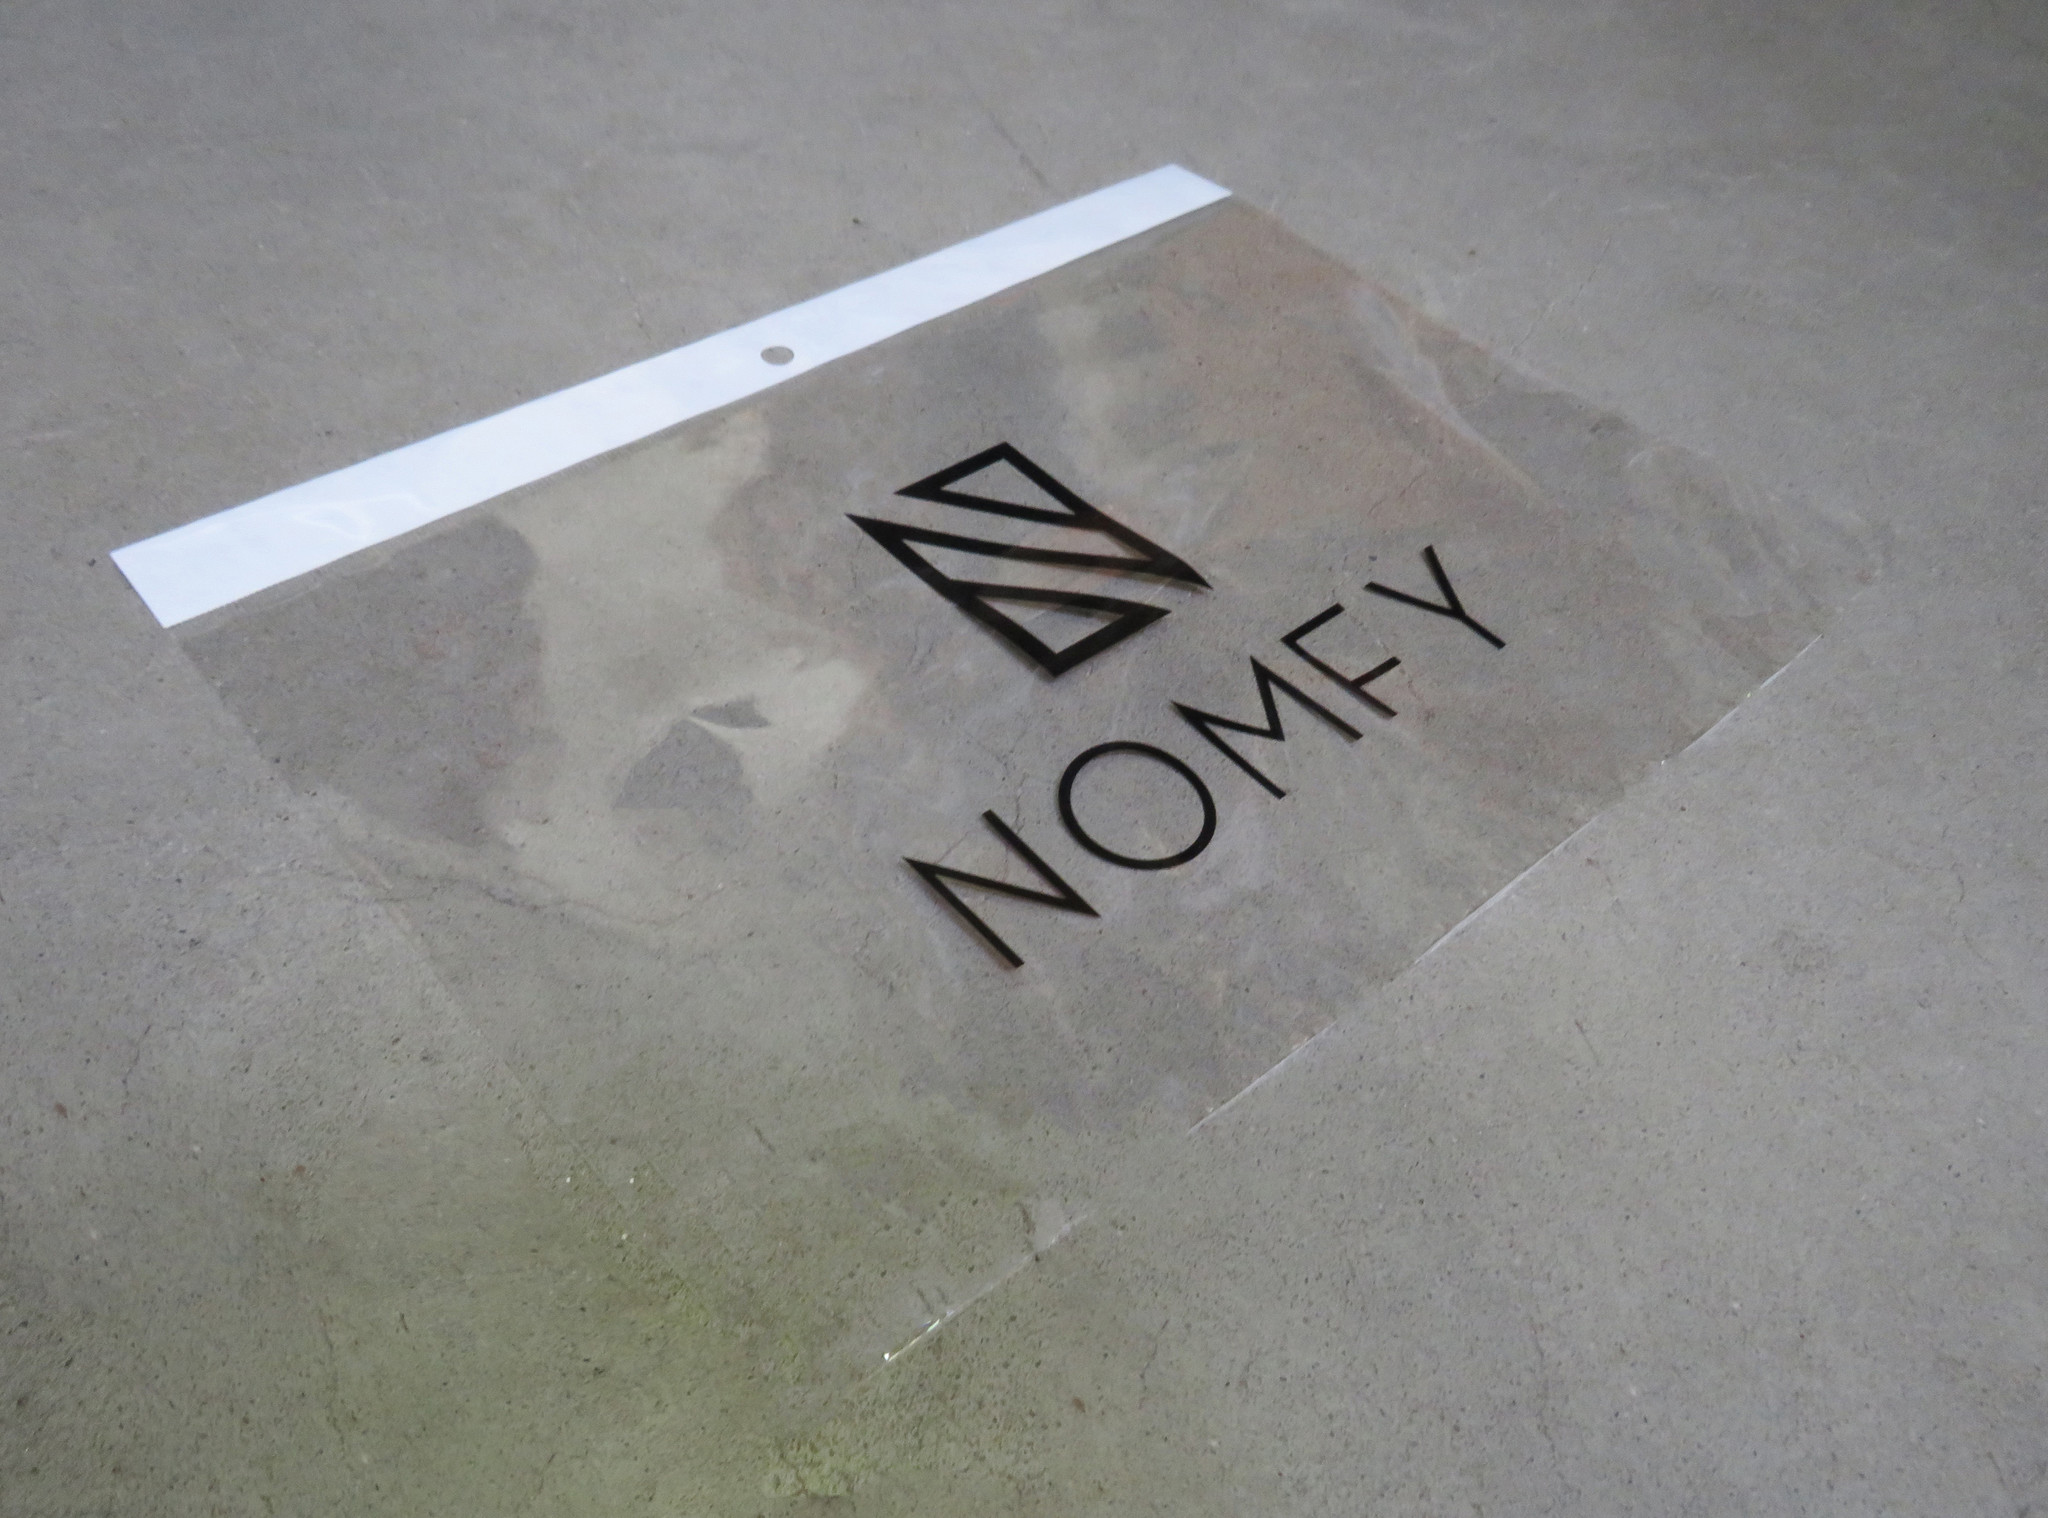 Nomfy Nomfy iPad Pro 12.9 2021 Screenprotector - 2 PACK